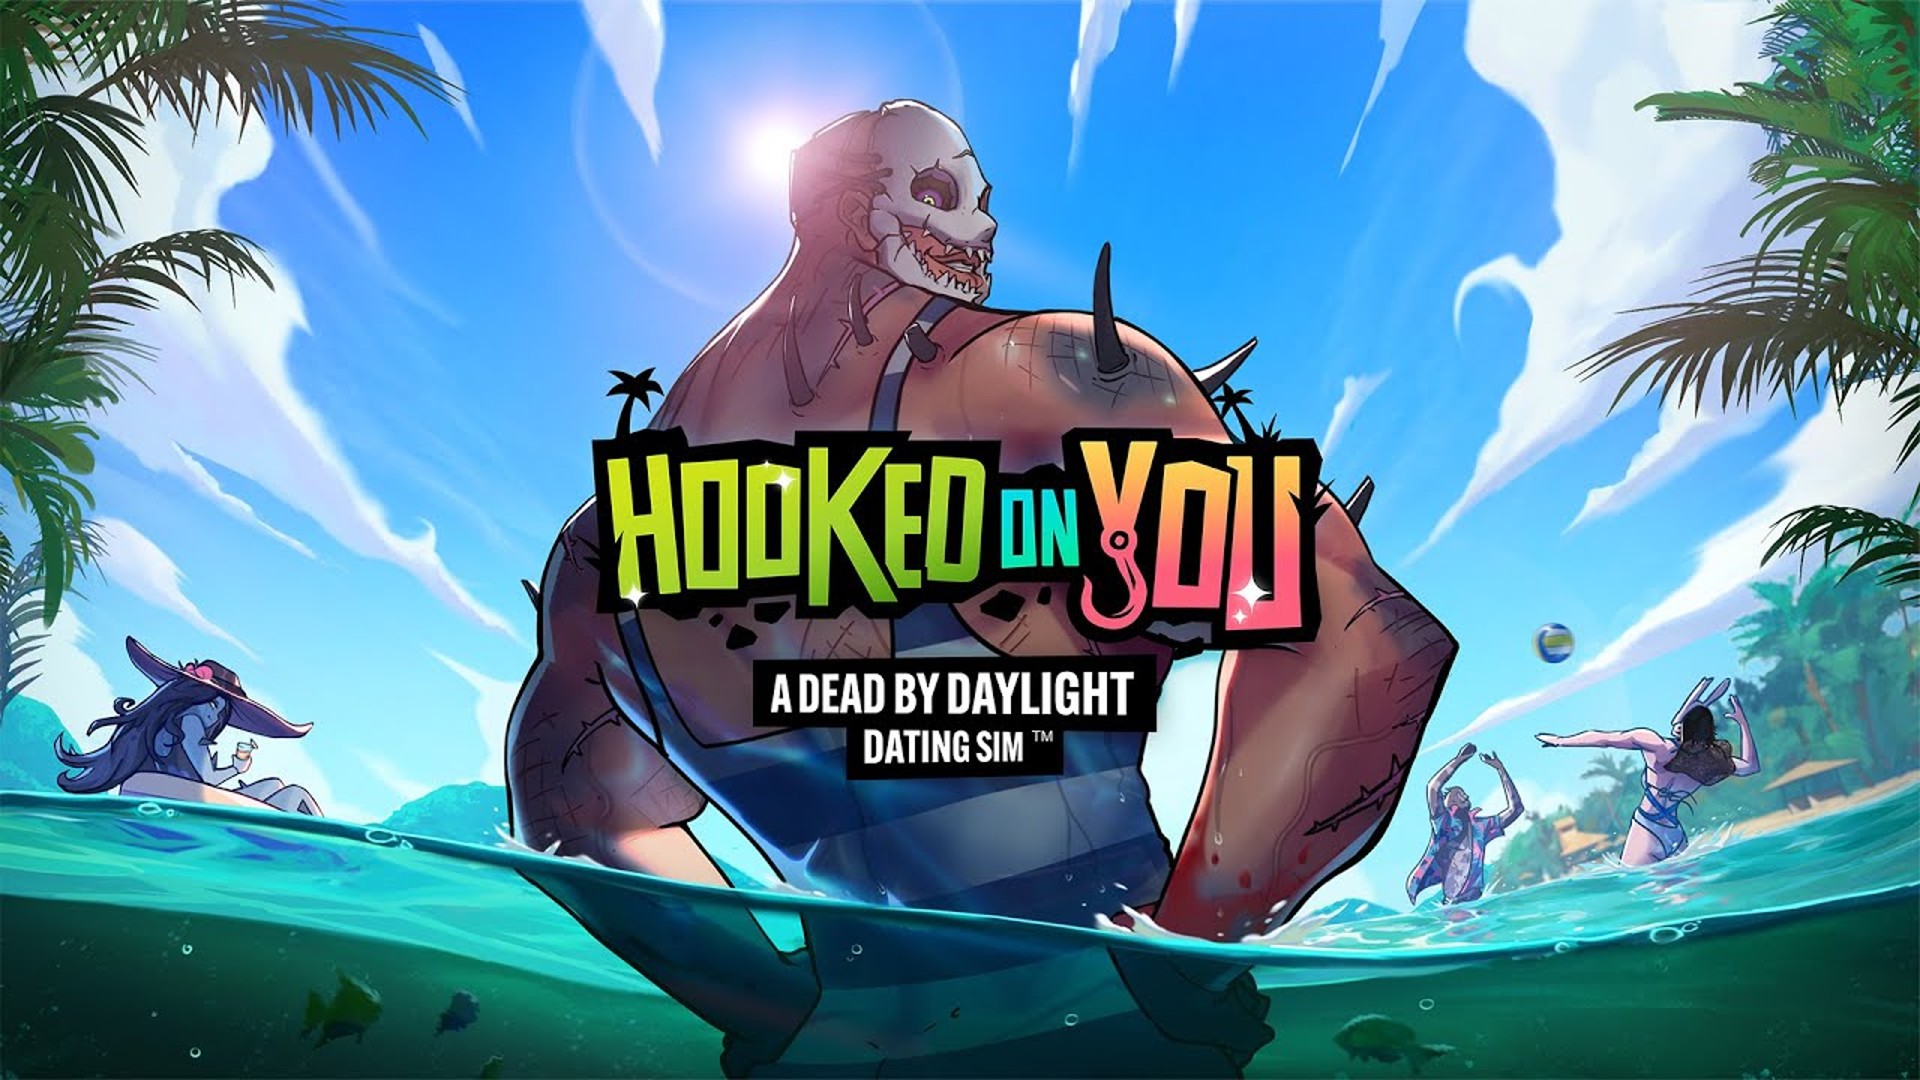 Hooked on You: A Dead by Daylight Dating Sim เกมจีบฆาตกรชื่อดัง วางจำหน่ายอย่างเป็นทางการแล้ว